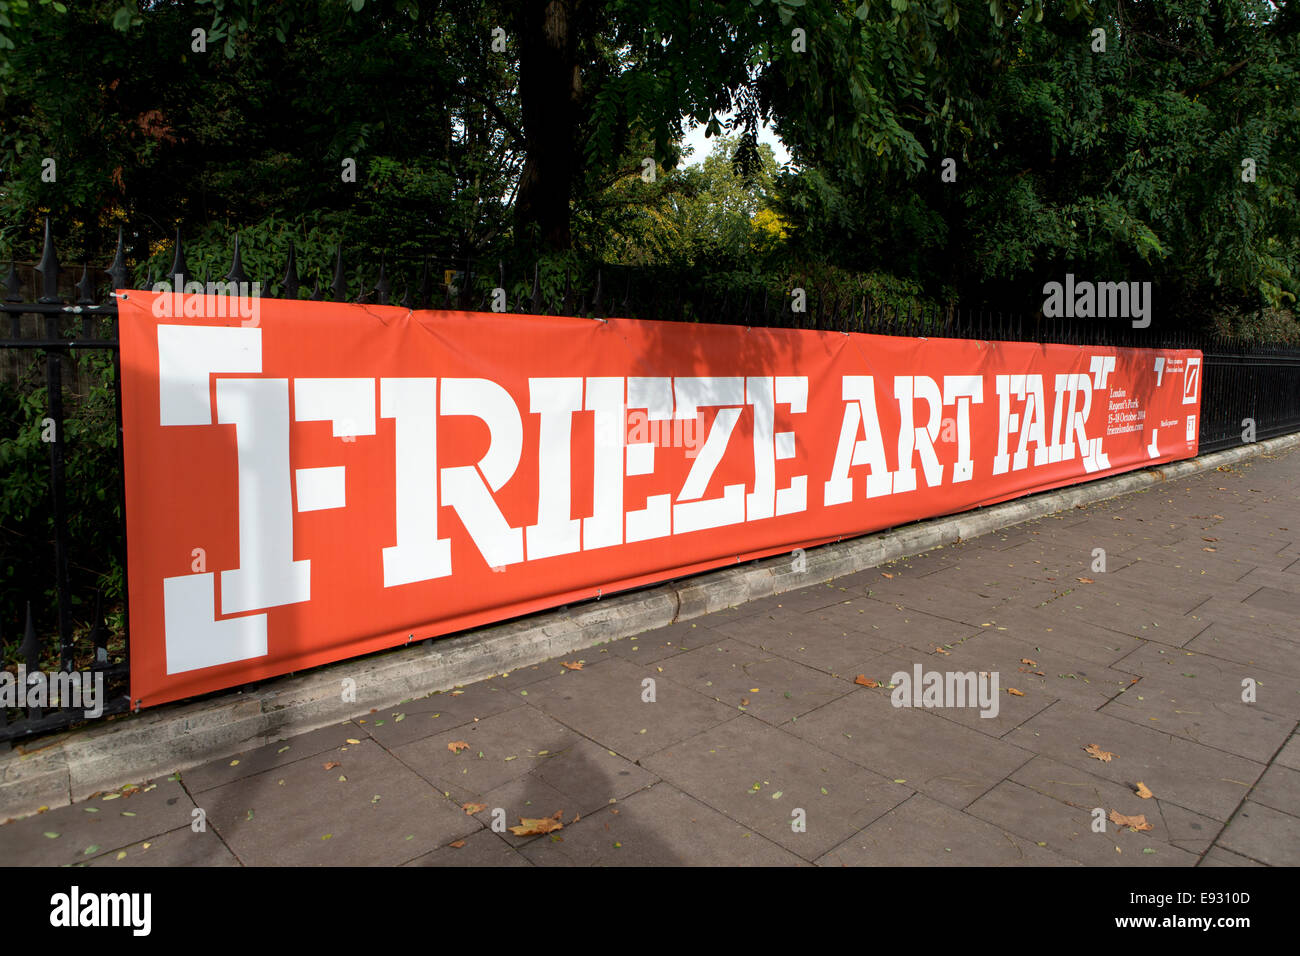 Frieze Art Fair 2014 sign, Regents Park, London, UK. Stock Photo